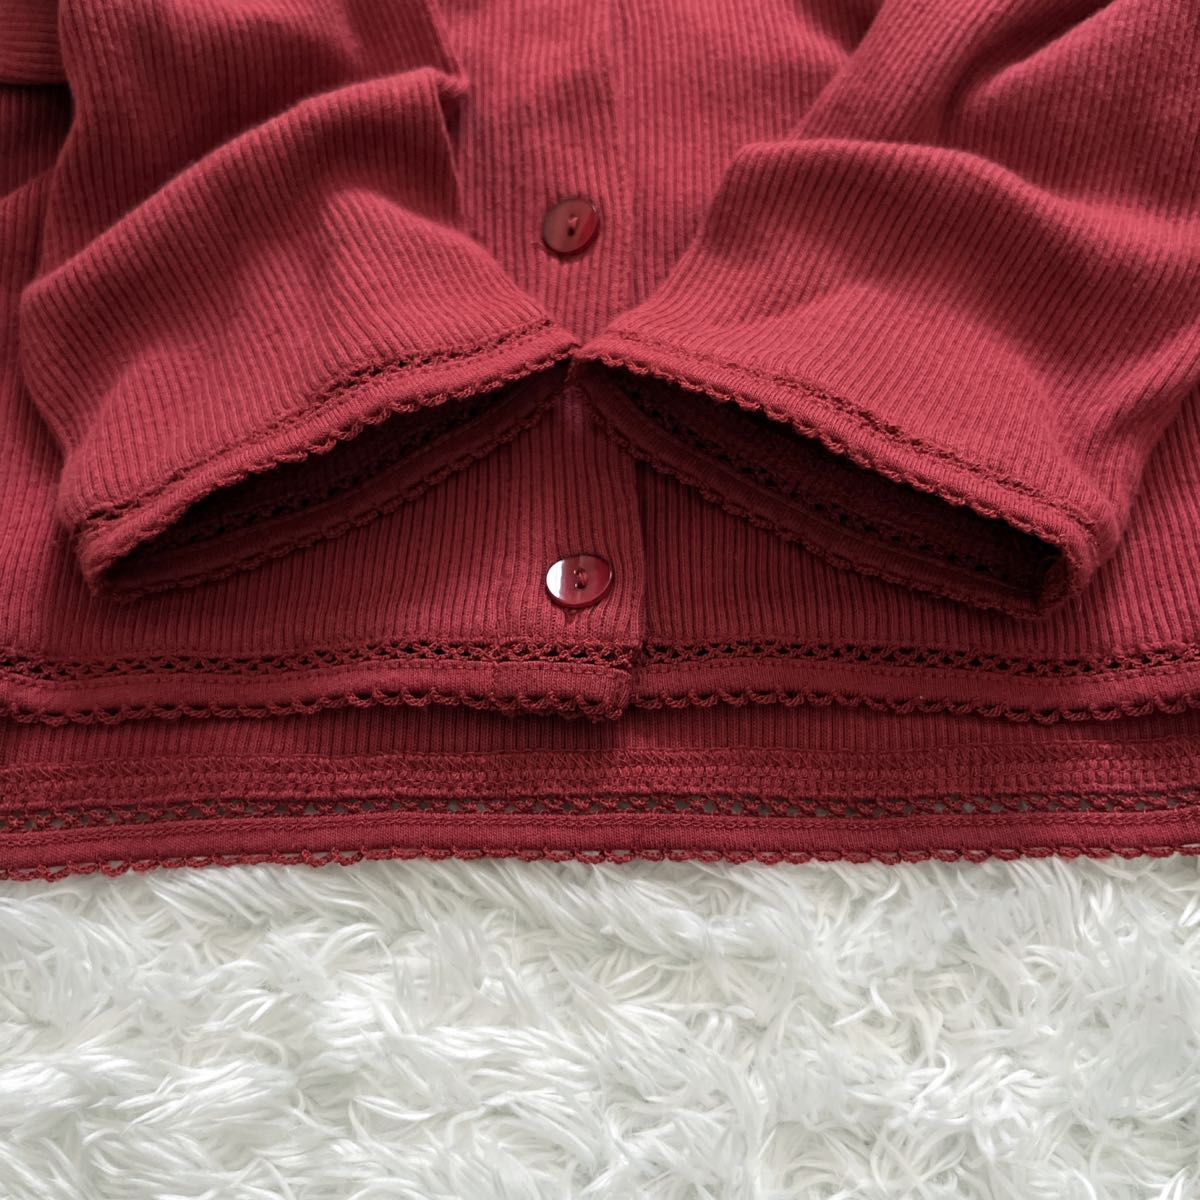 ローラアシュレイ カーディガン 赤 長袖 薄手 コットン リブ 縁飾り カットワーク クルーネック LARGE 大きいサイズ